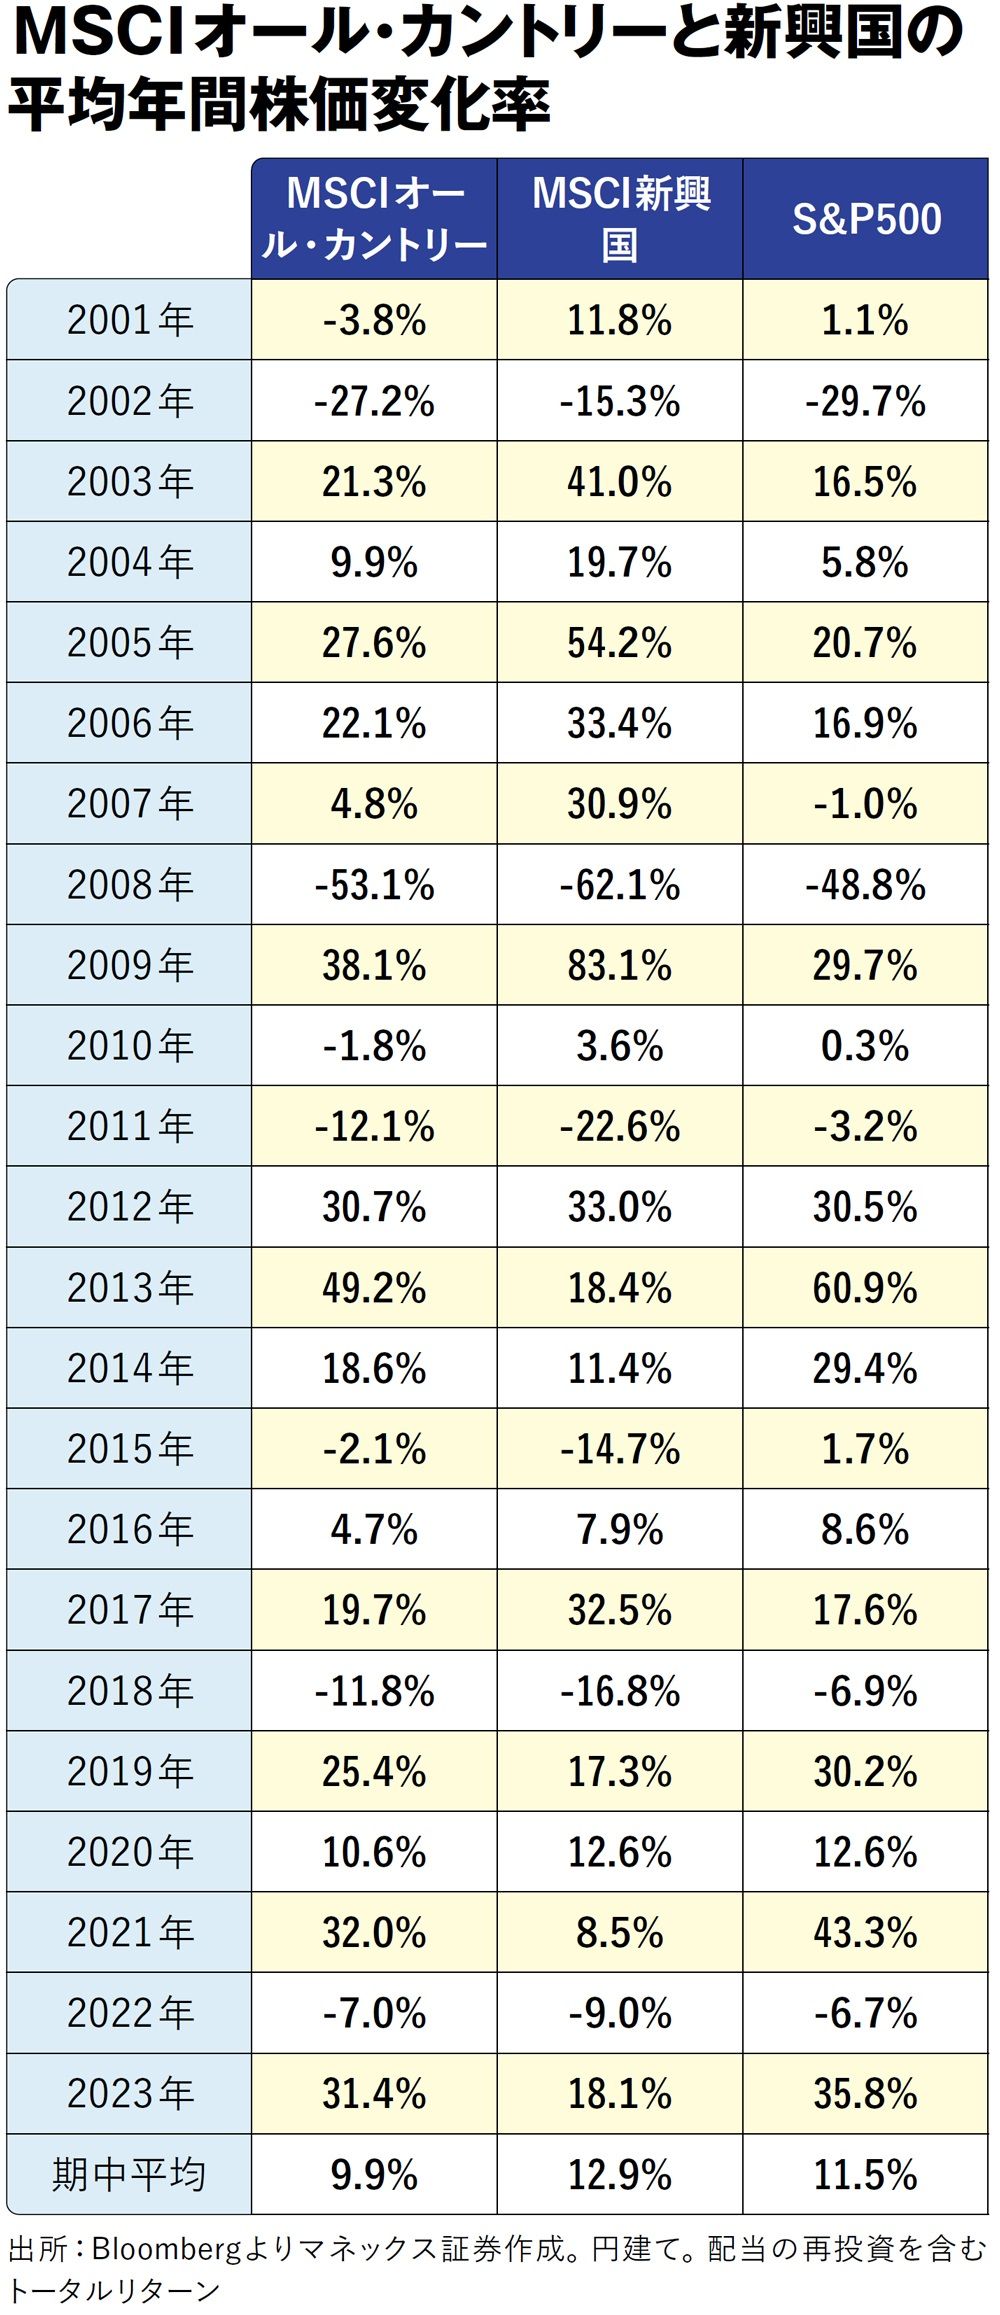 MSCIオール・カントリーと新興国の平均年間株価変化率